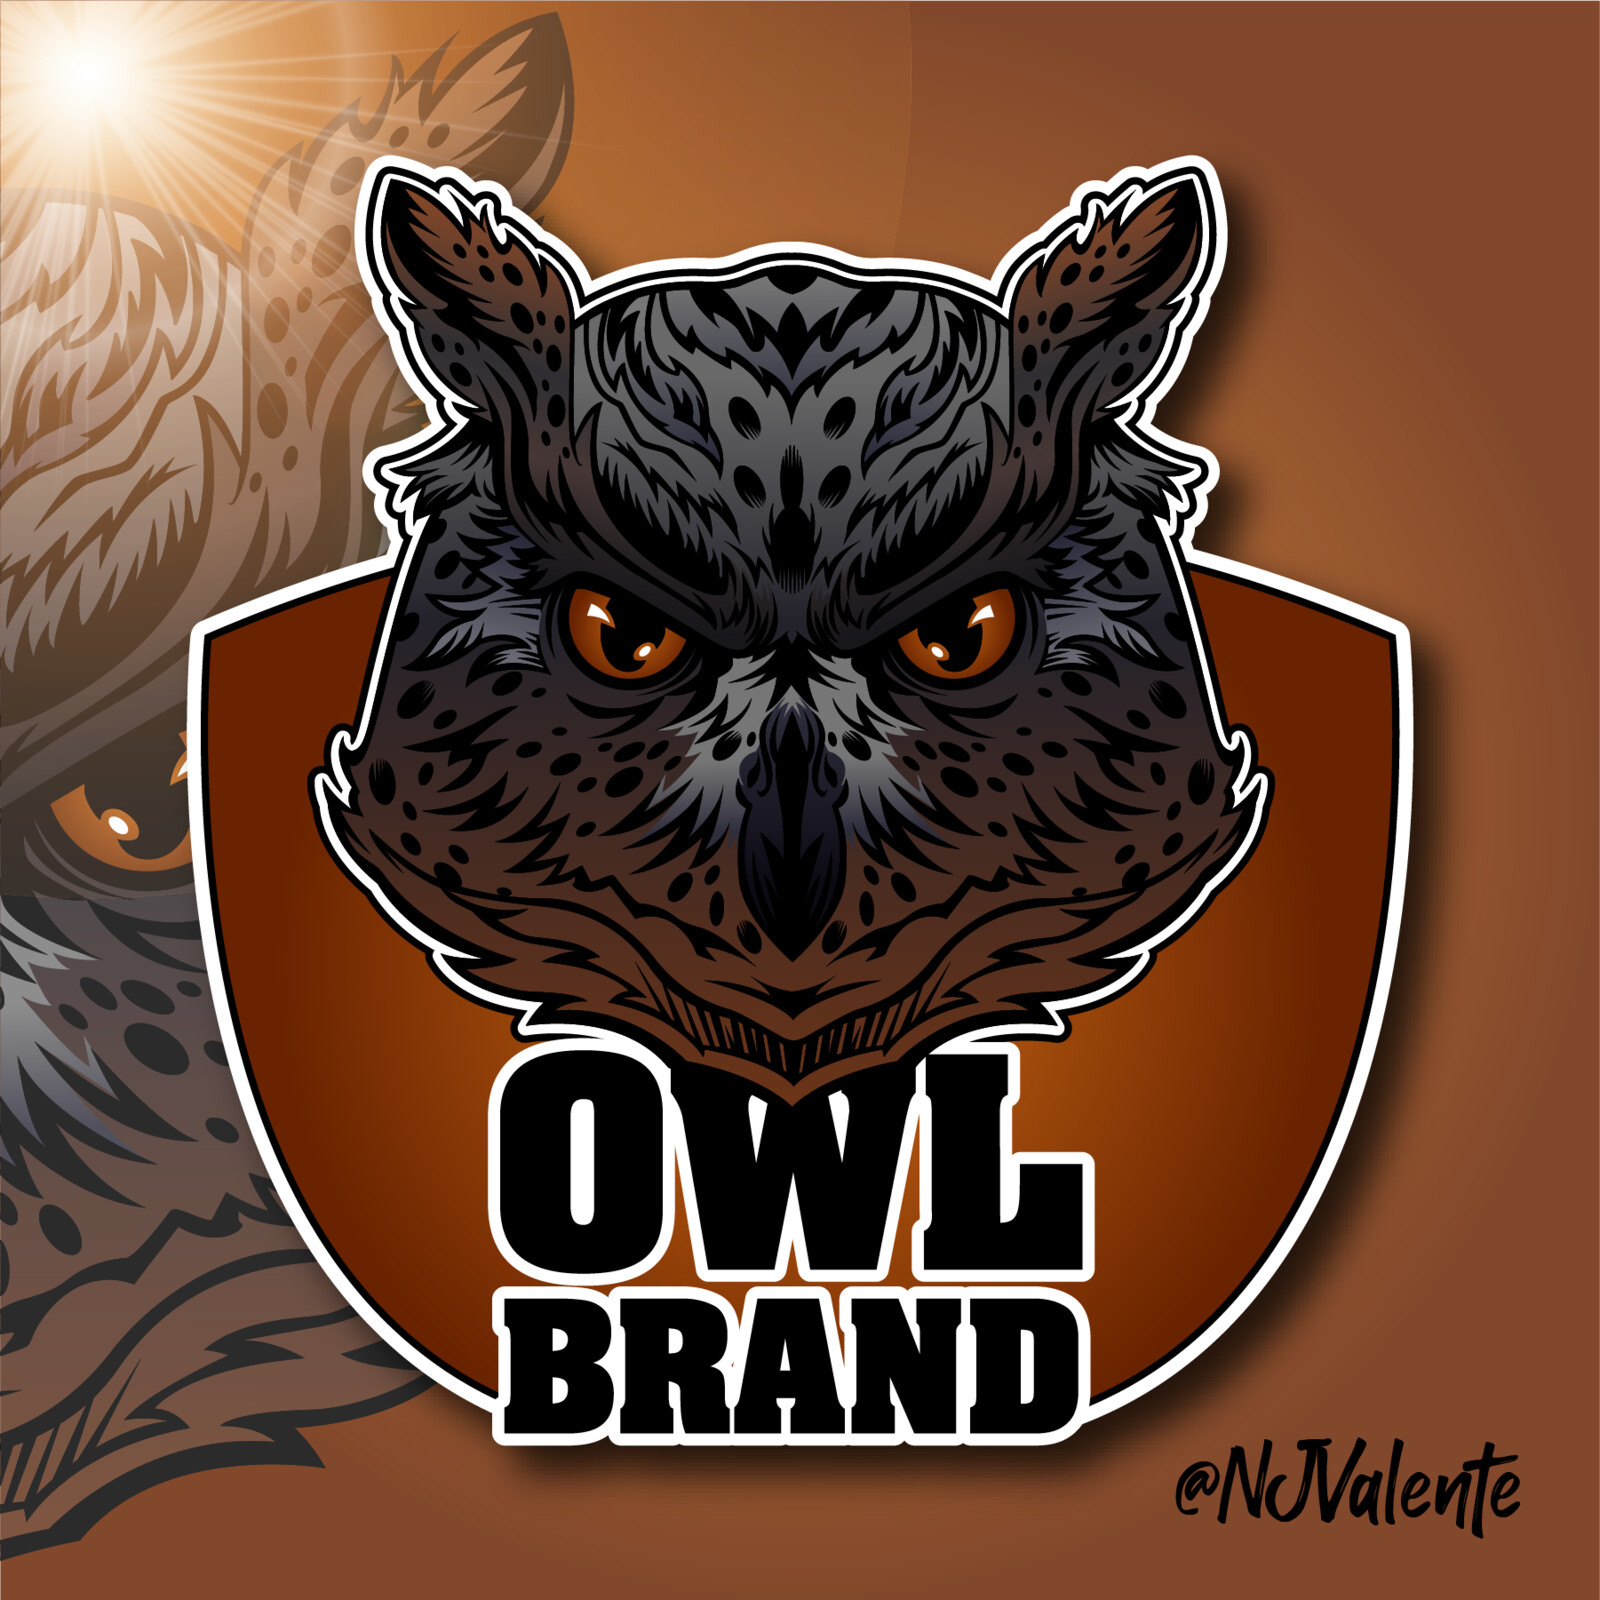 Mascot logo for branding, and social media.